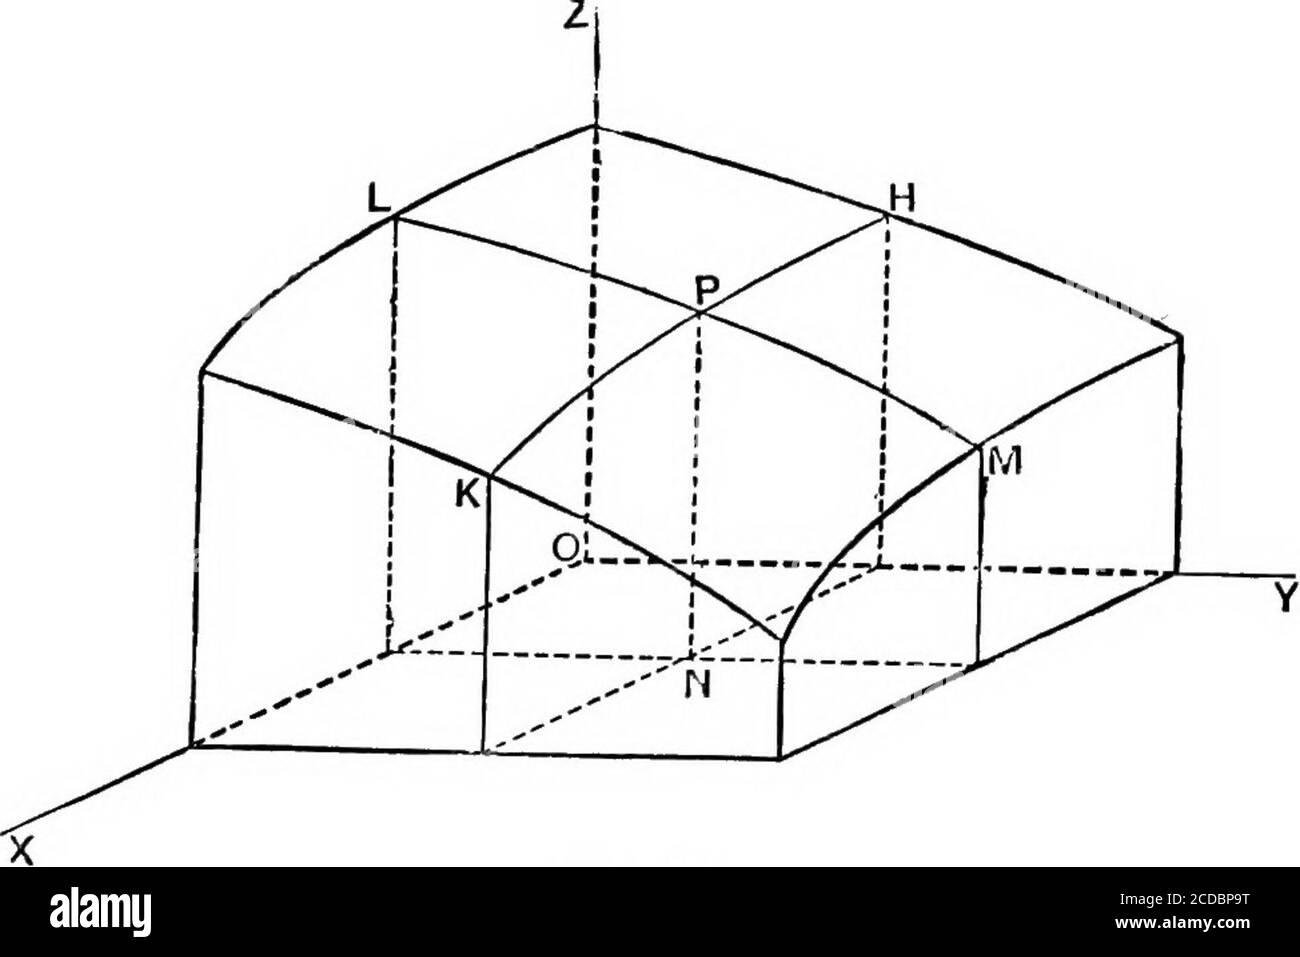 Un cours élémentaire de calcul infinitésimal . ion varie inversement comme  le carré de la distanced'un point fixe dans la ligne de mouvement. 8. Si s  est une fonction quadratique de